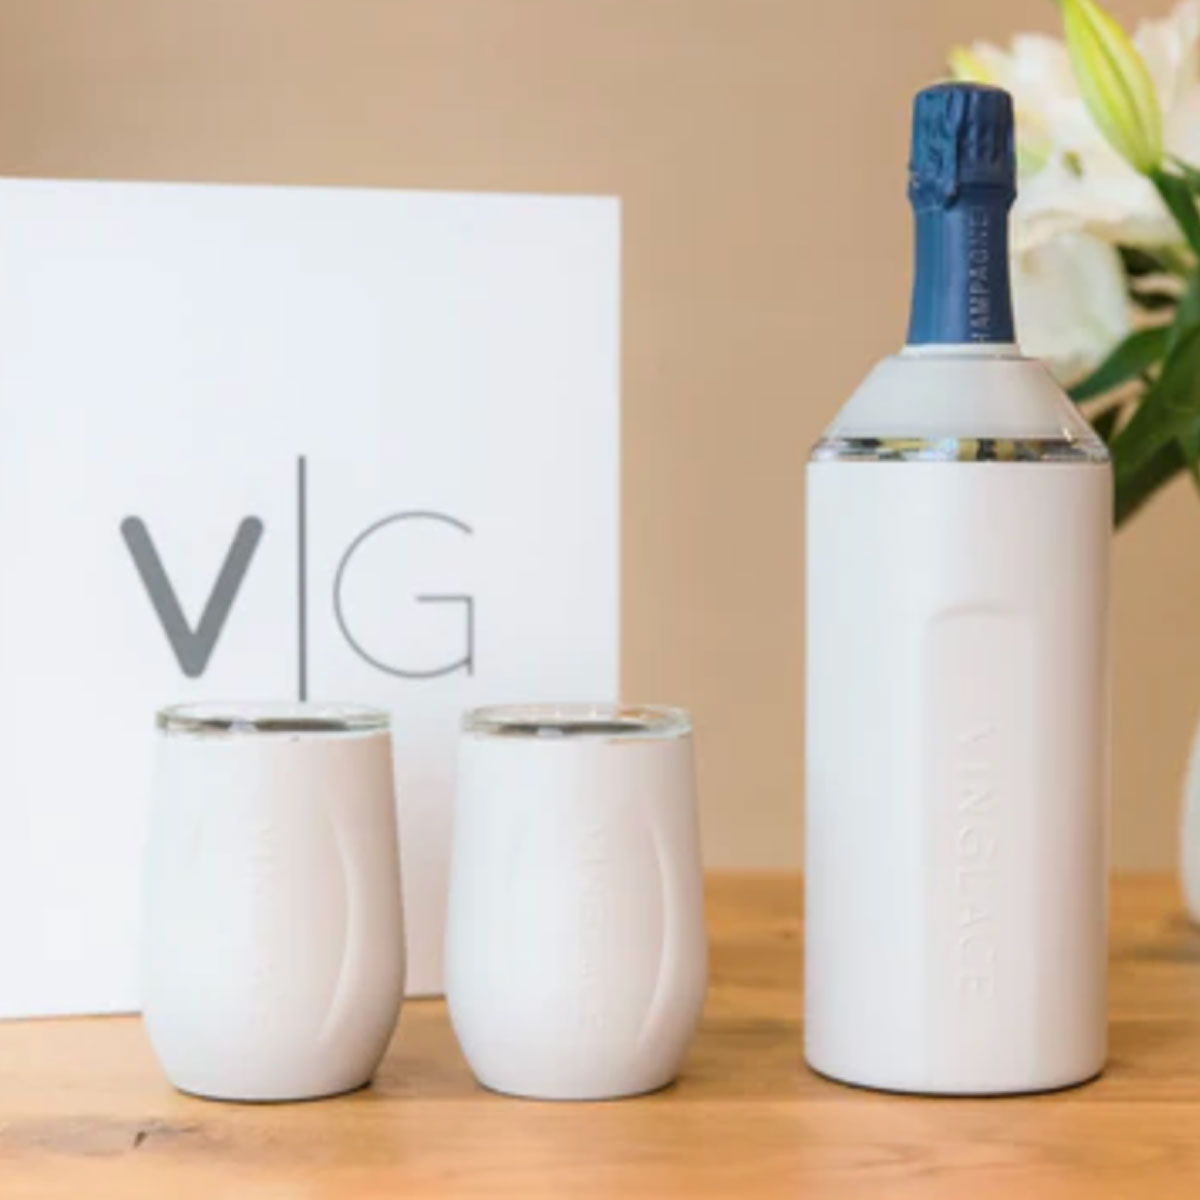 Vinglacé Wine Set - 2 Glasses & Bottle Chiller – UnMask